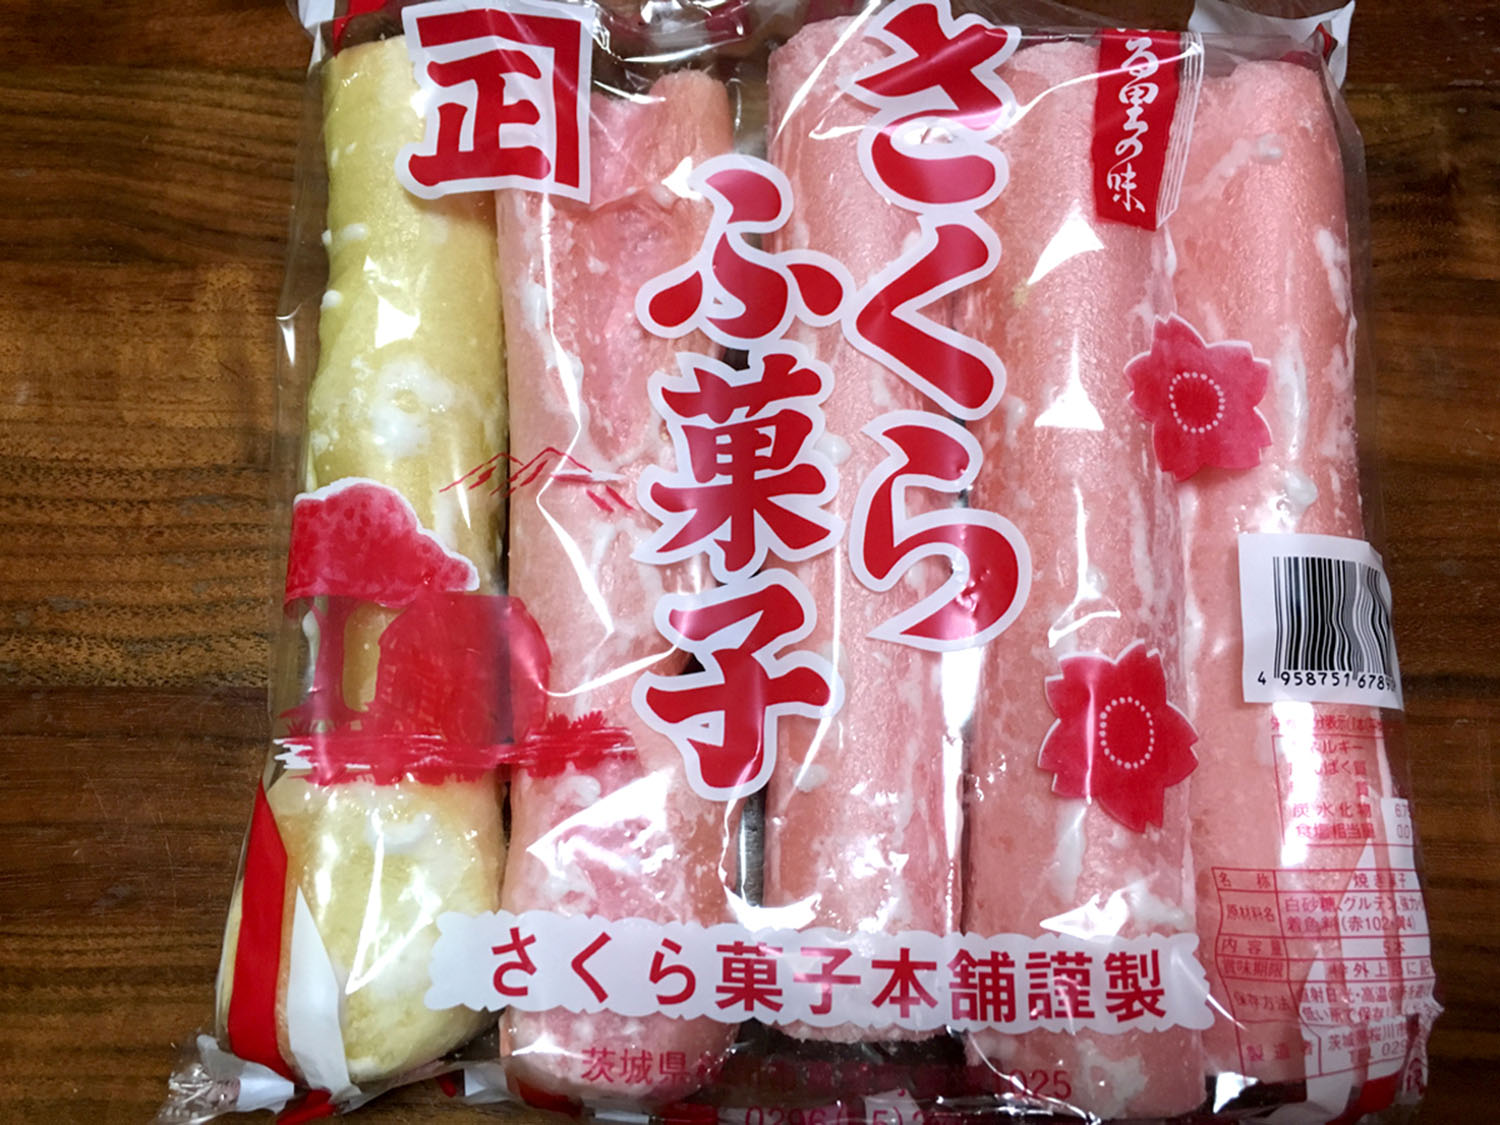 筑波山で購入したピンクの麩菓子。「ふ菓子」という表記がかわいい（さくら菓子本舗）。